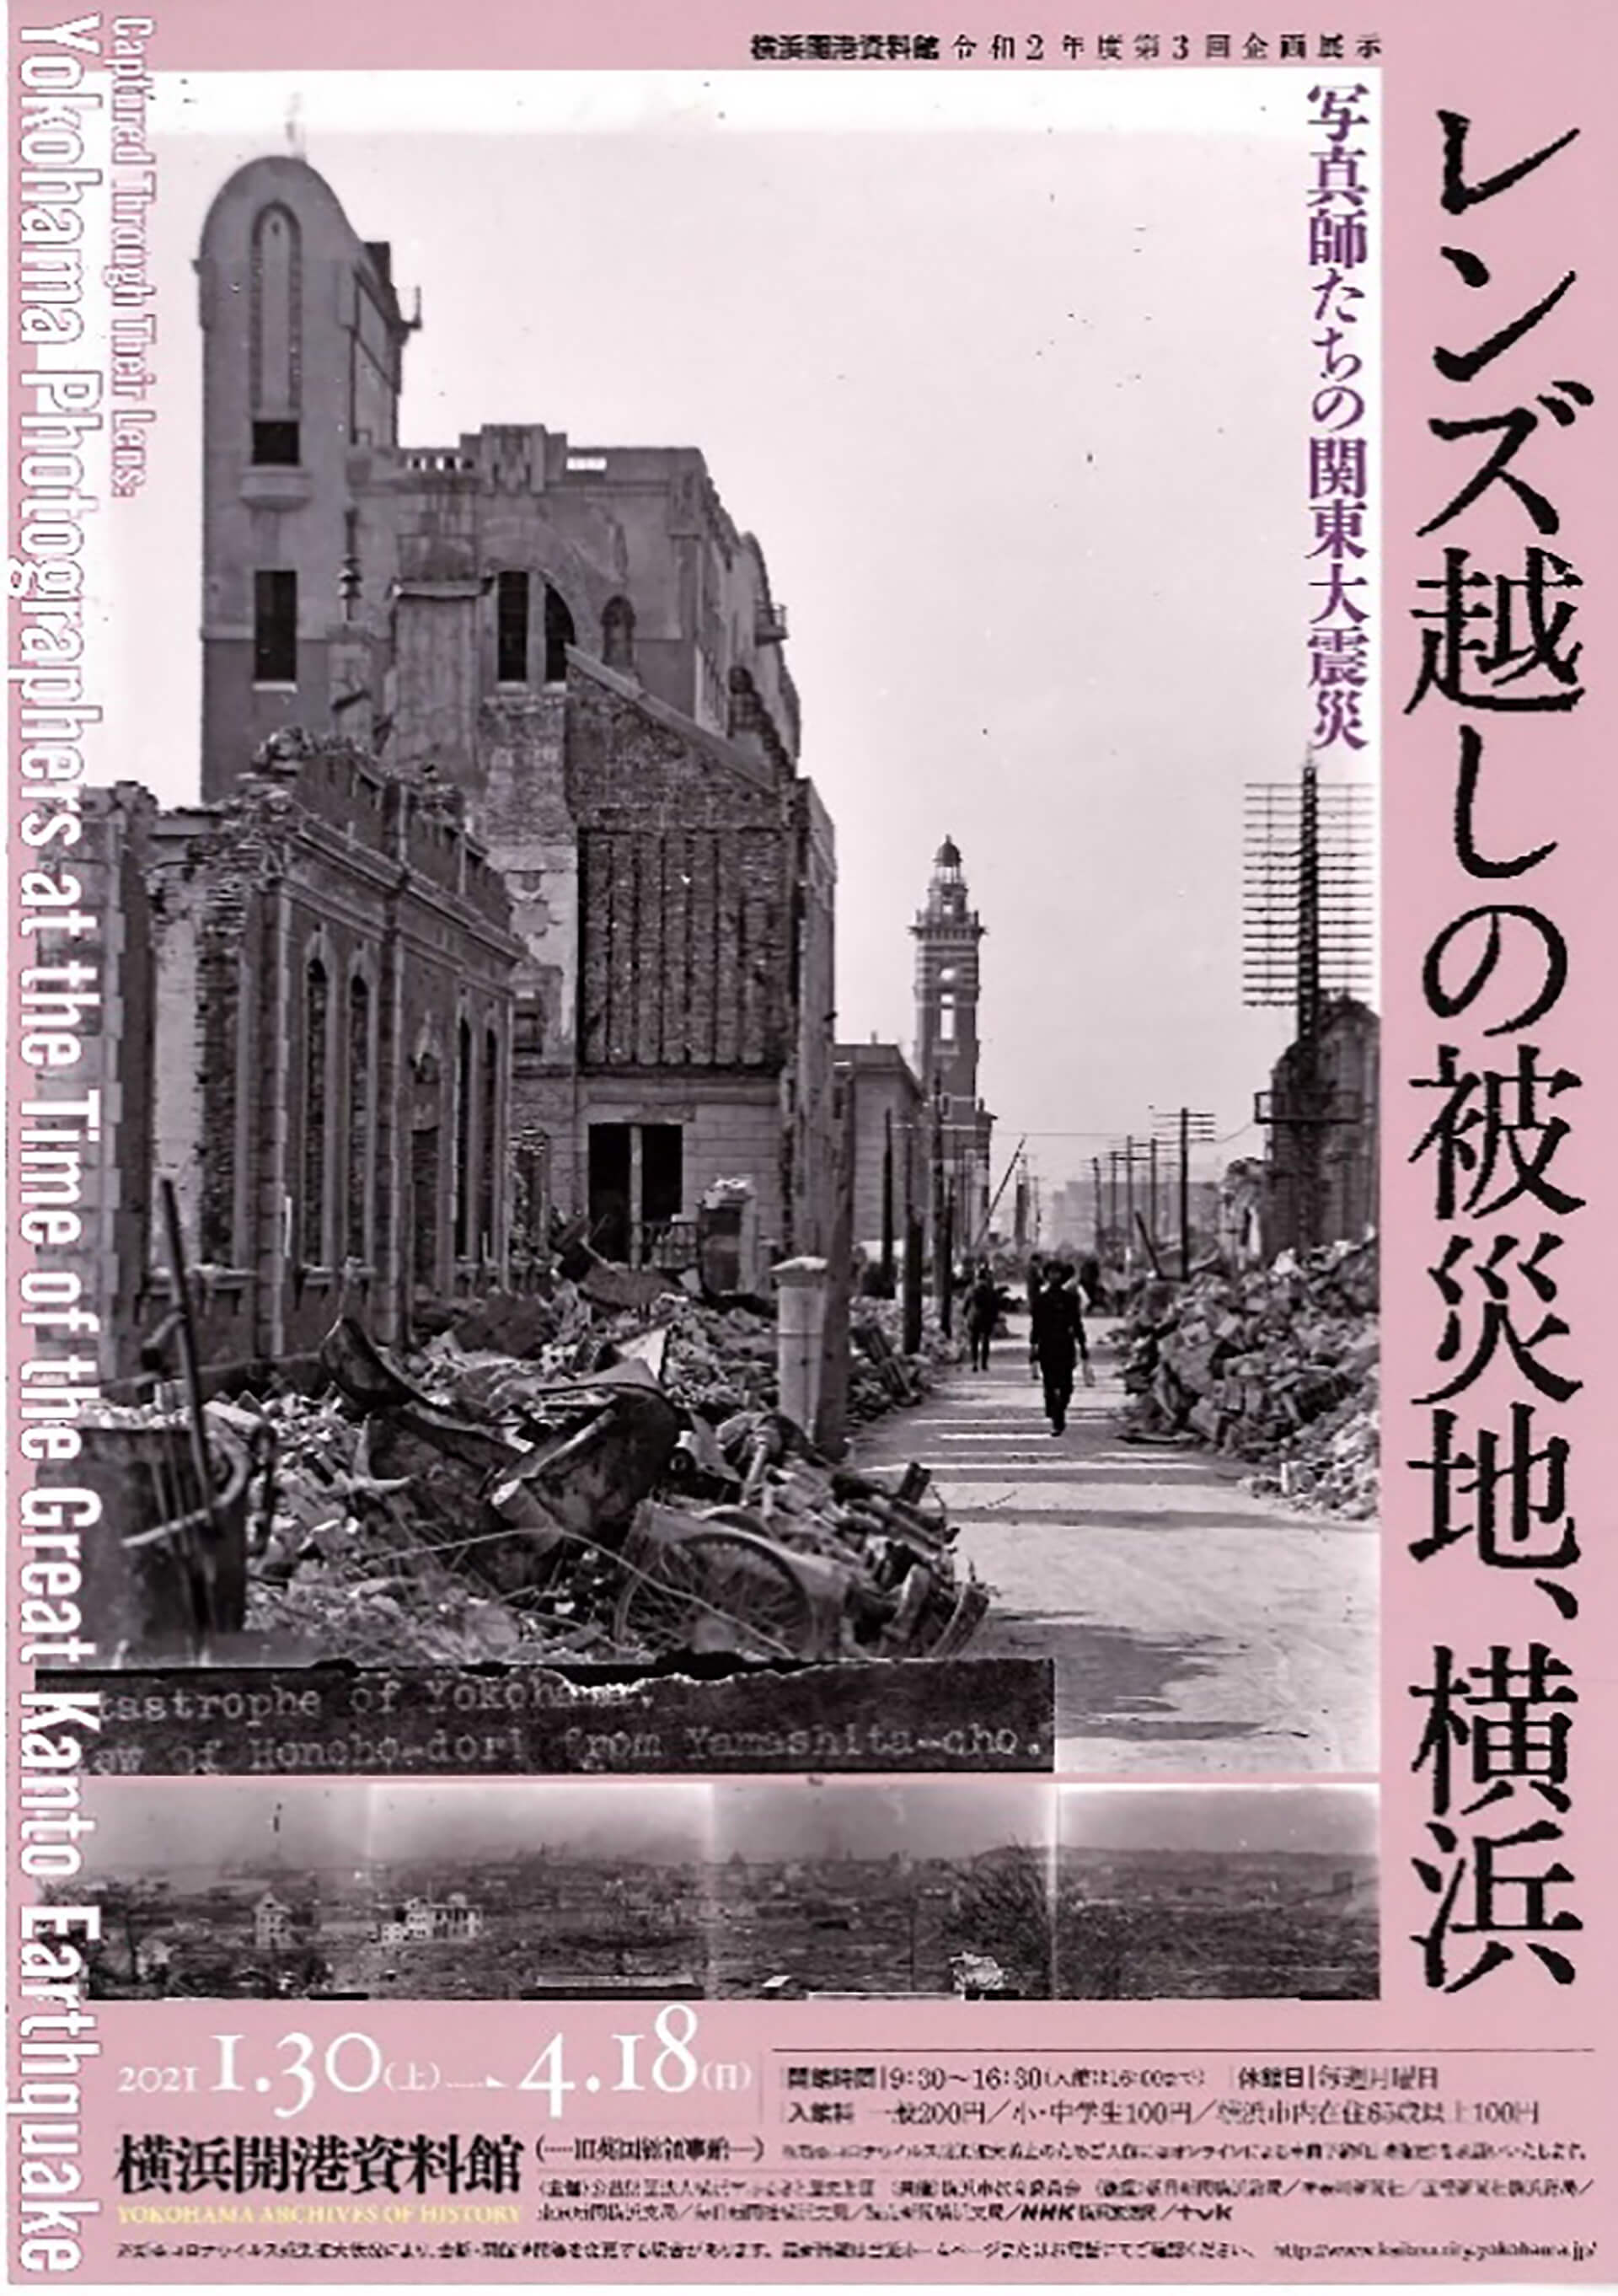 企画展示「レンズ越しの被災地、横浜 ―写真師たちの関東大震災―」